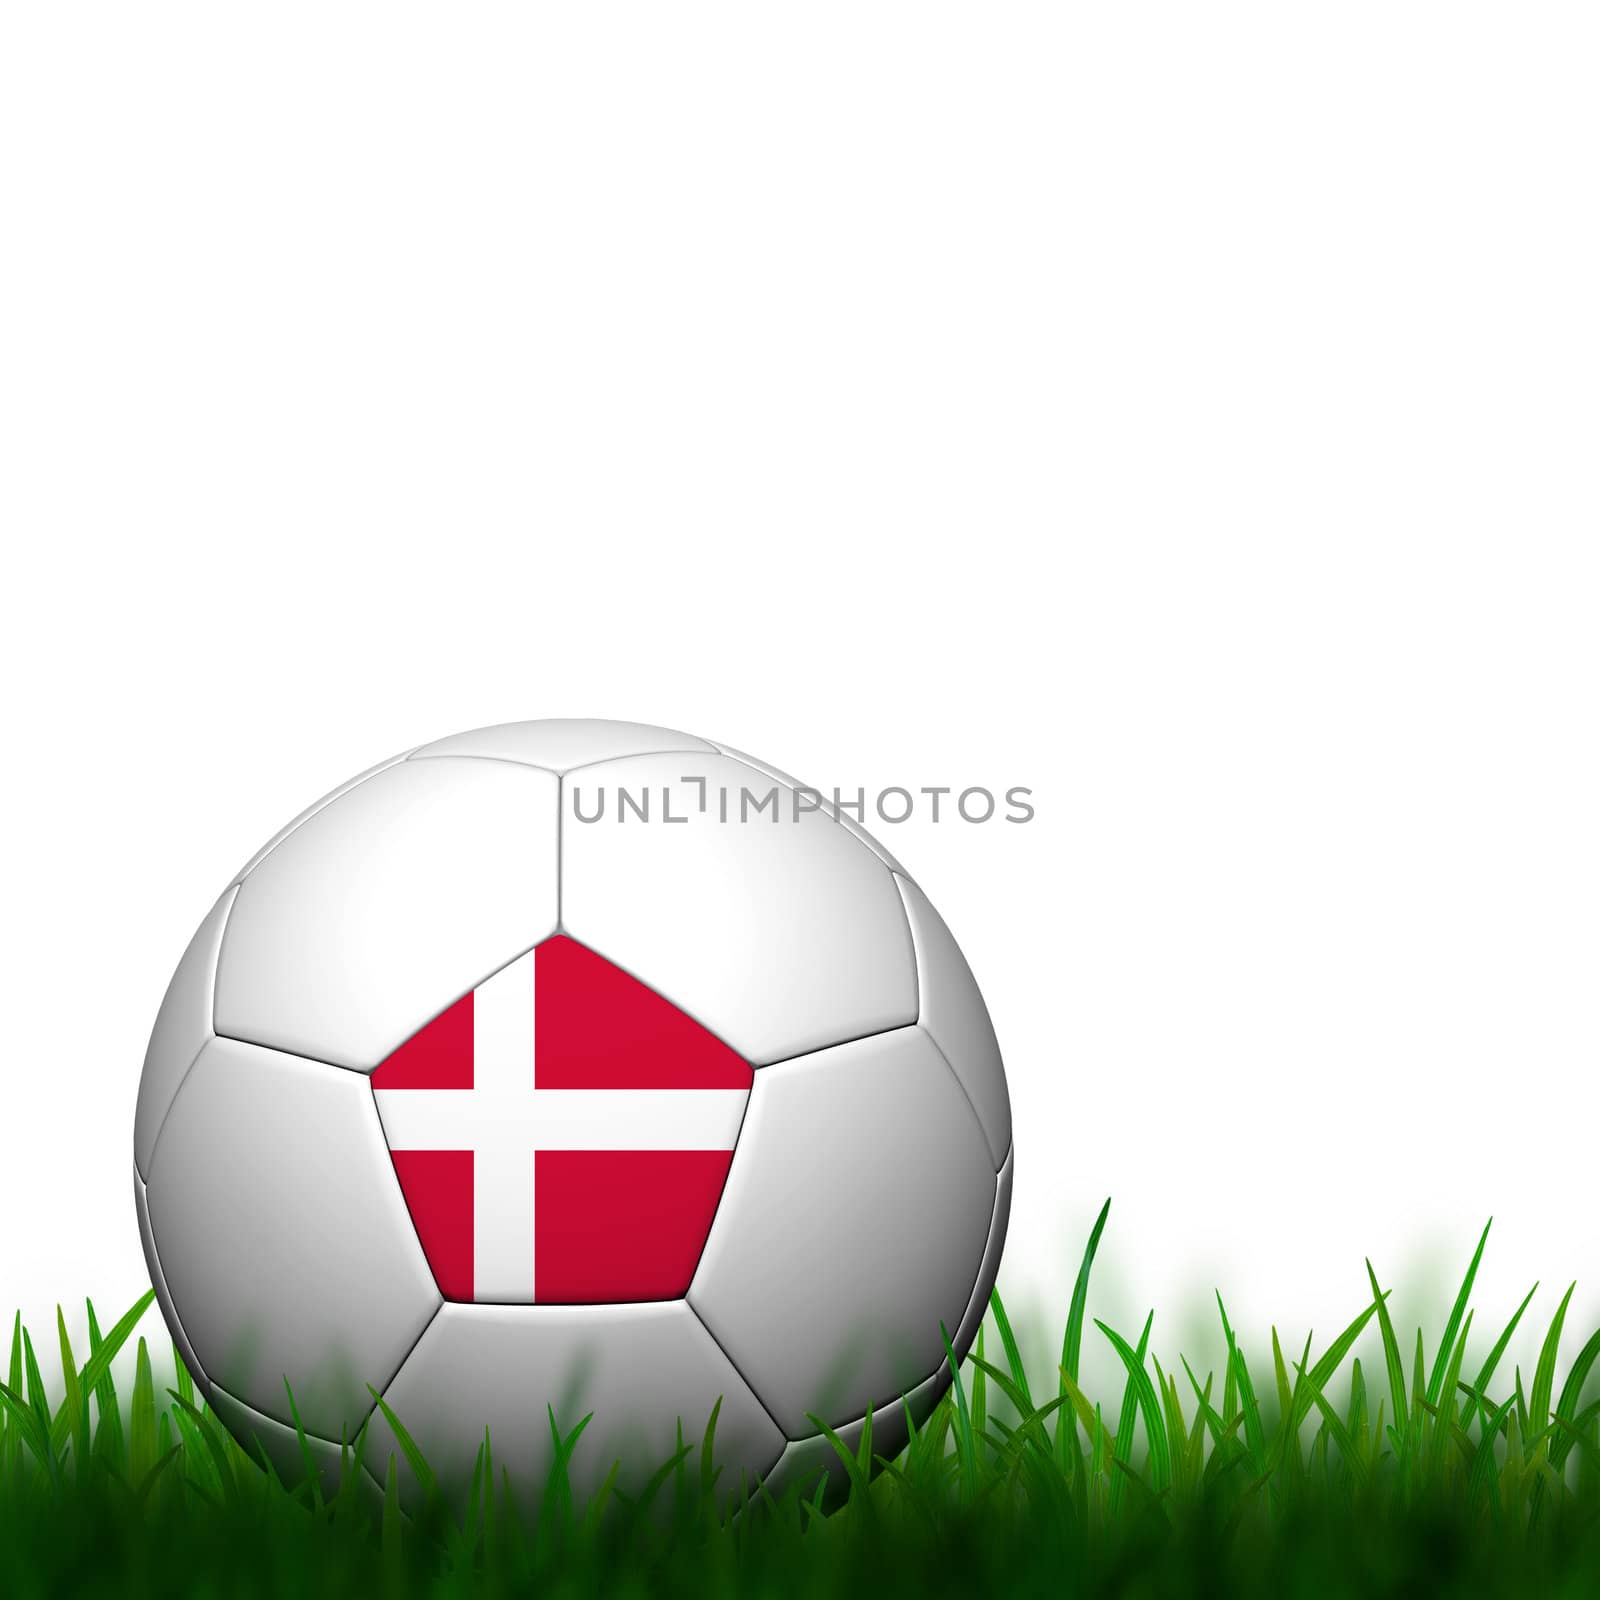 3D Football Denmark Flag Patter in green grass on white backgrou by jakgree